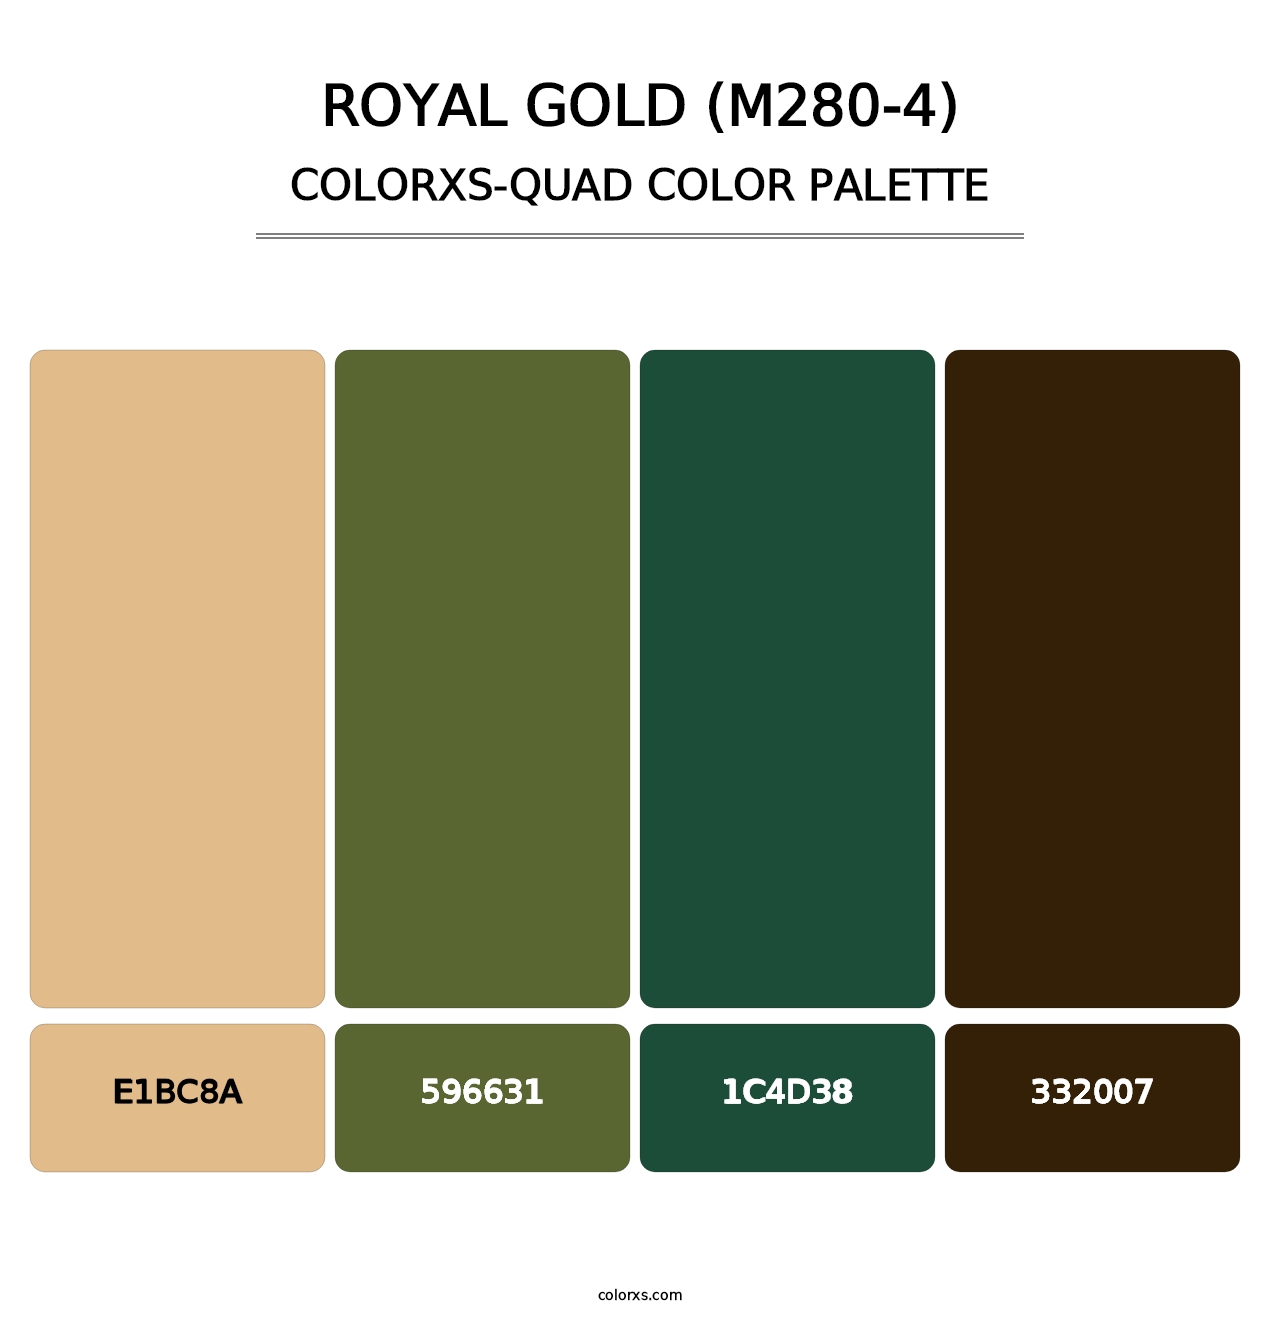 Royal Gold (M280-4) - Colorxs Quad Palette